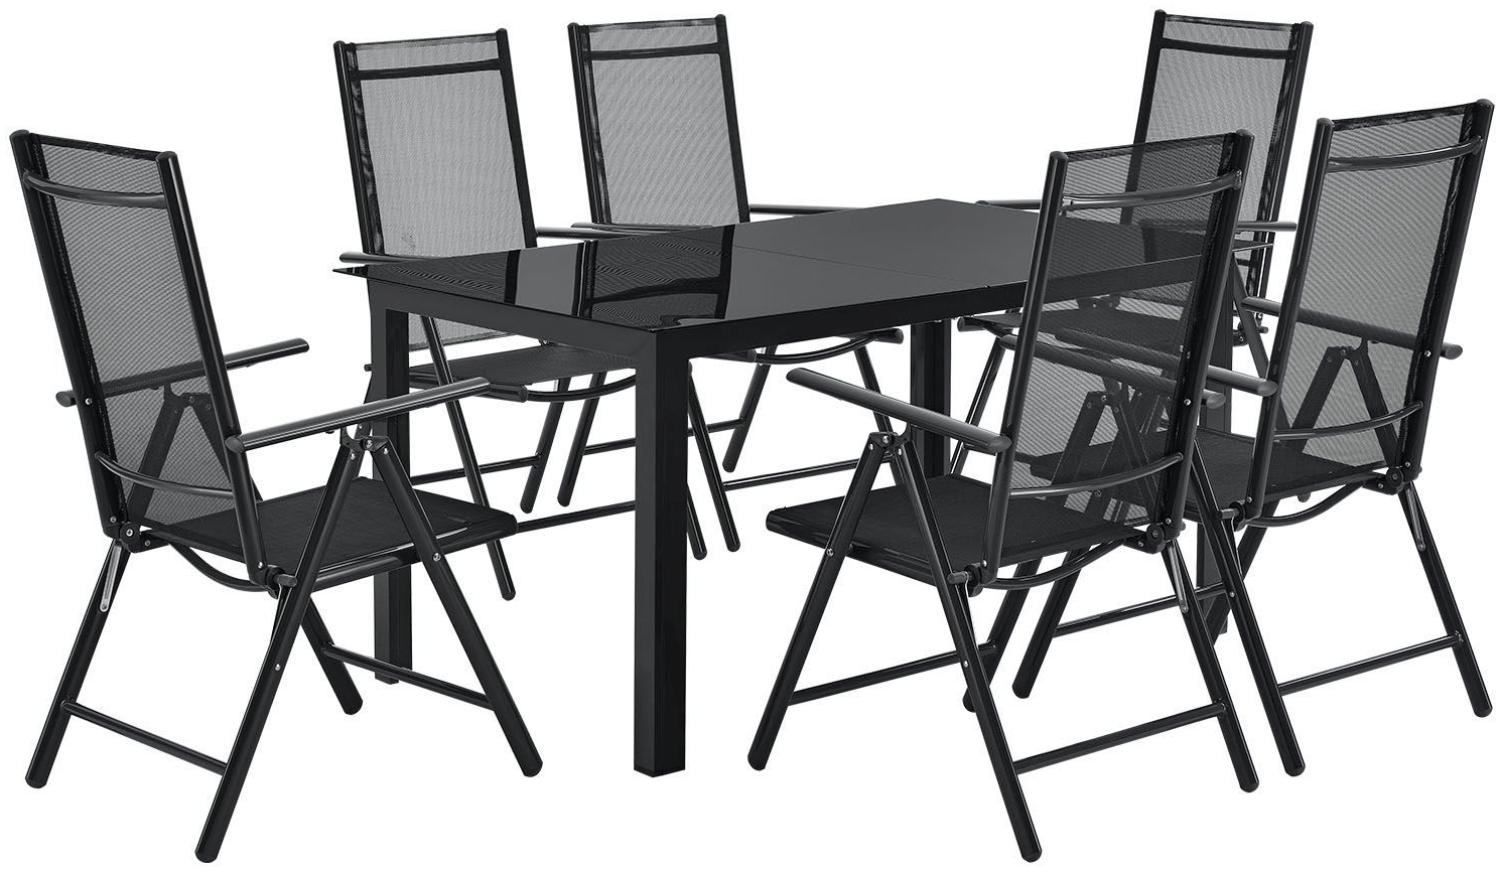 Juskys Aluminium Gartengarnitur Milano Gartenmöbel Set mit Tisch und 6 Stühlen Dunkel-Grau mit schwarzer Kunstfaser Alu Sitzgruppe Balkonmöbel Bild 1